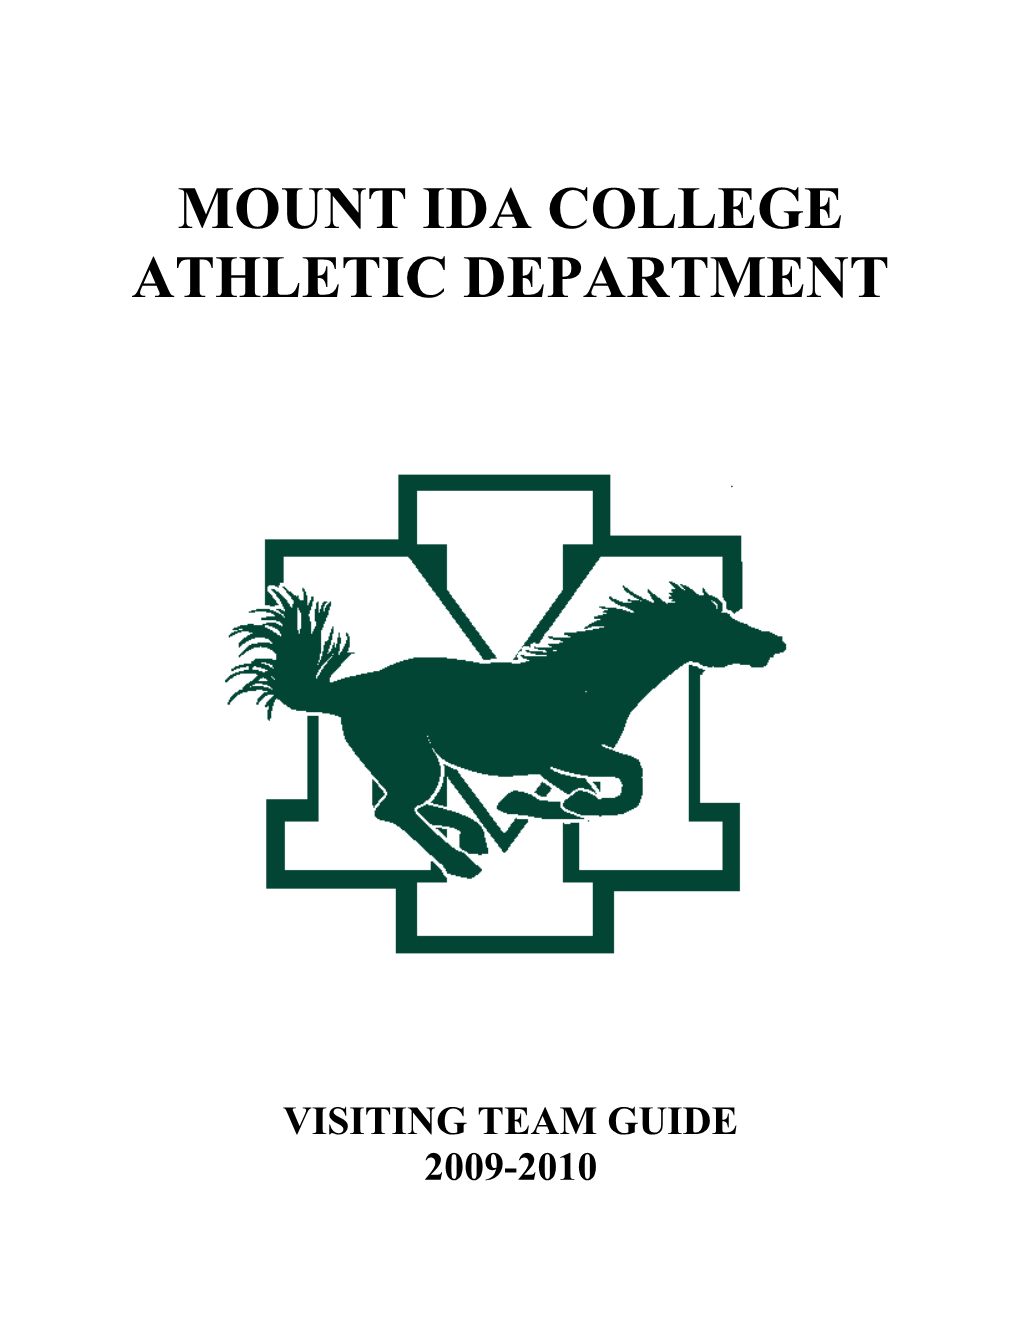 Dear Mount Ida College Athletic Guest